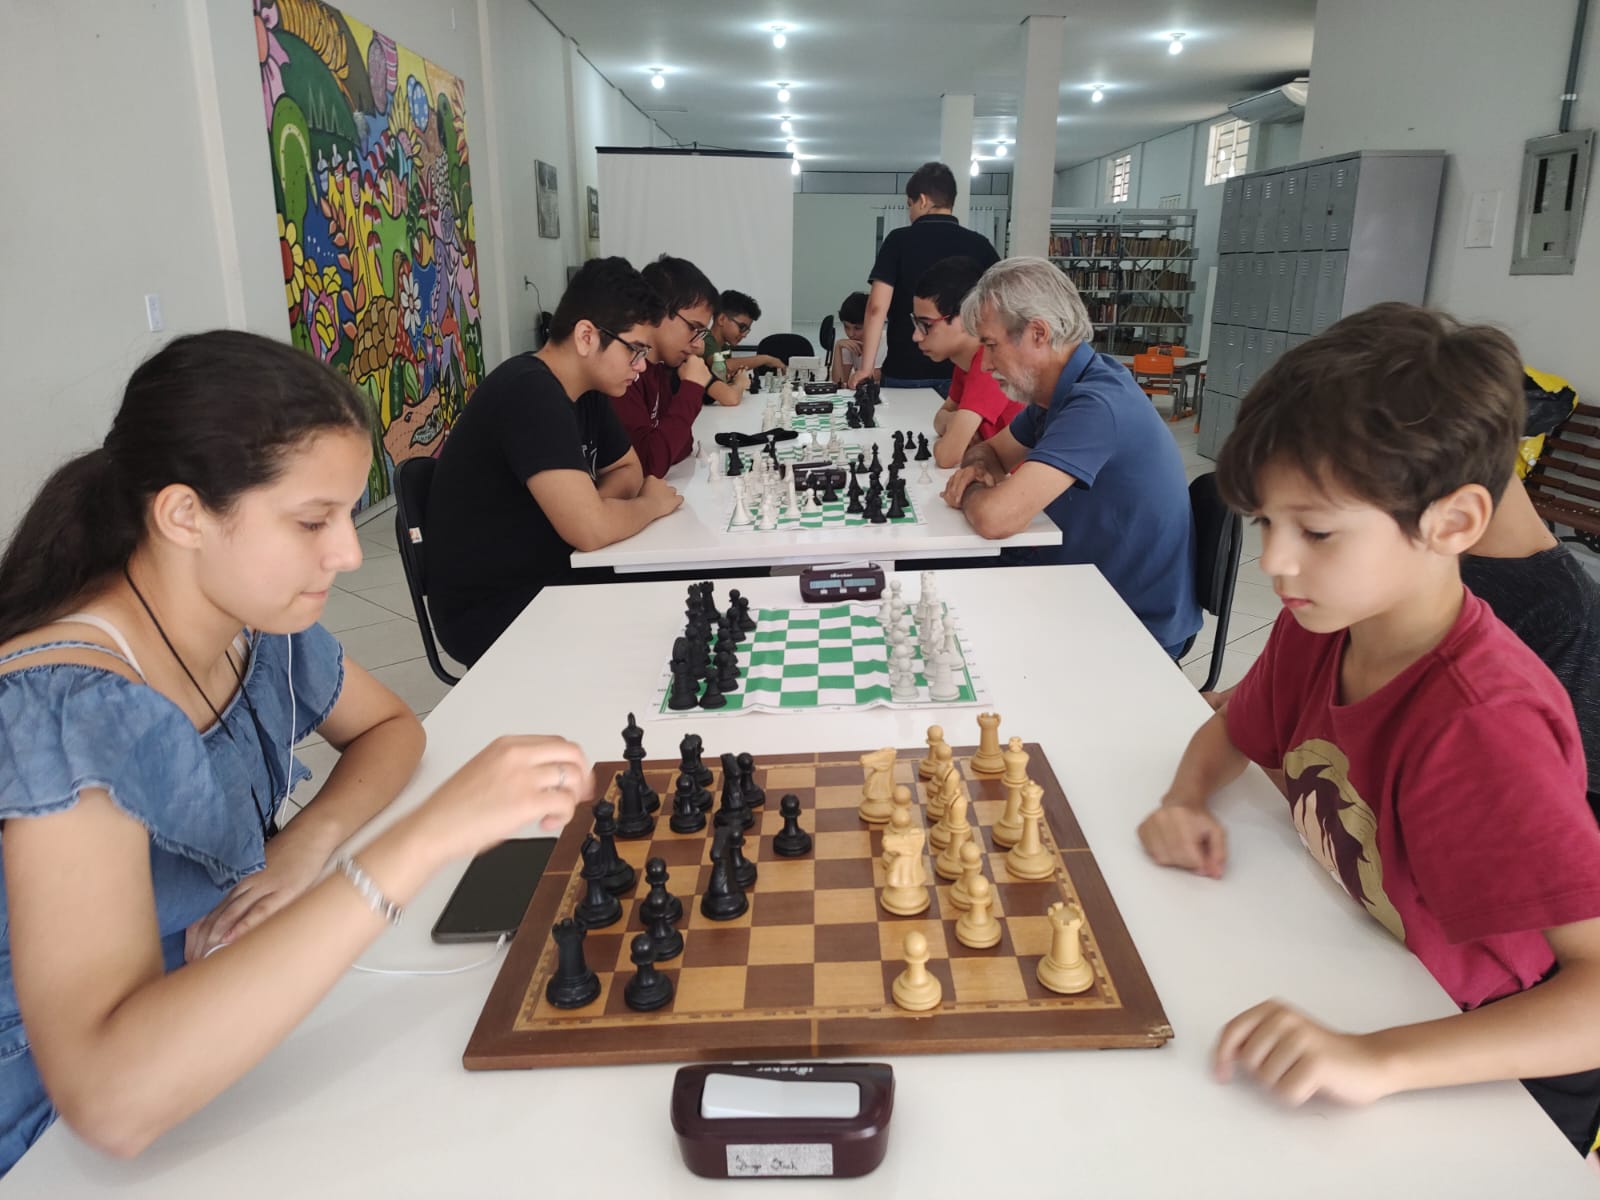 Biblioteca Vidal Ramos oferece aulas gratuitas de xadrez 